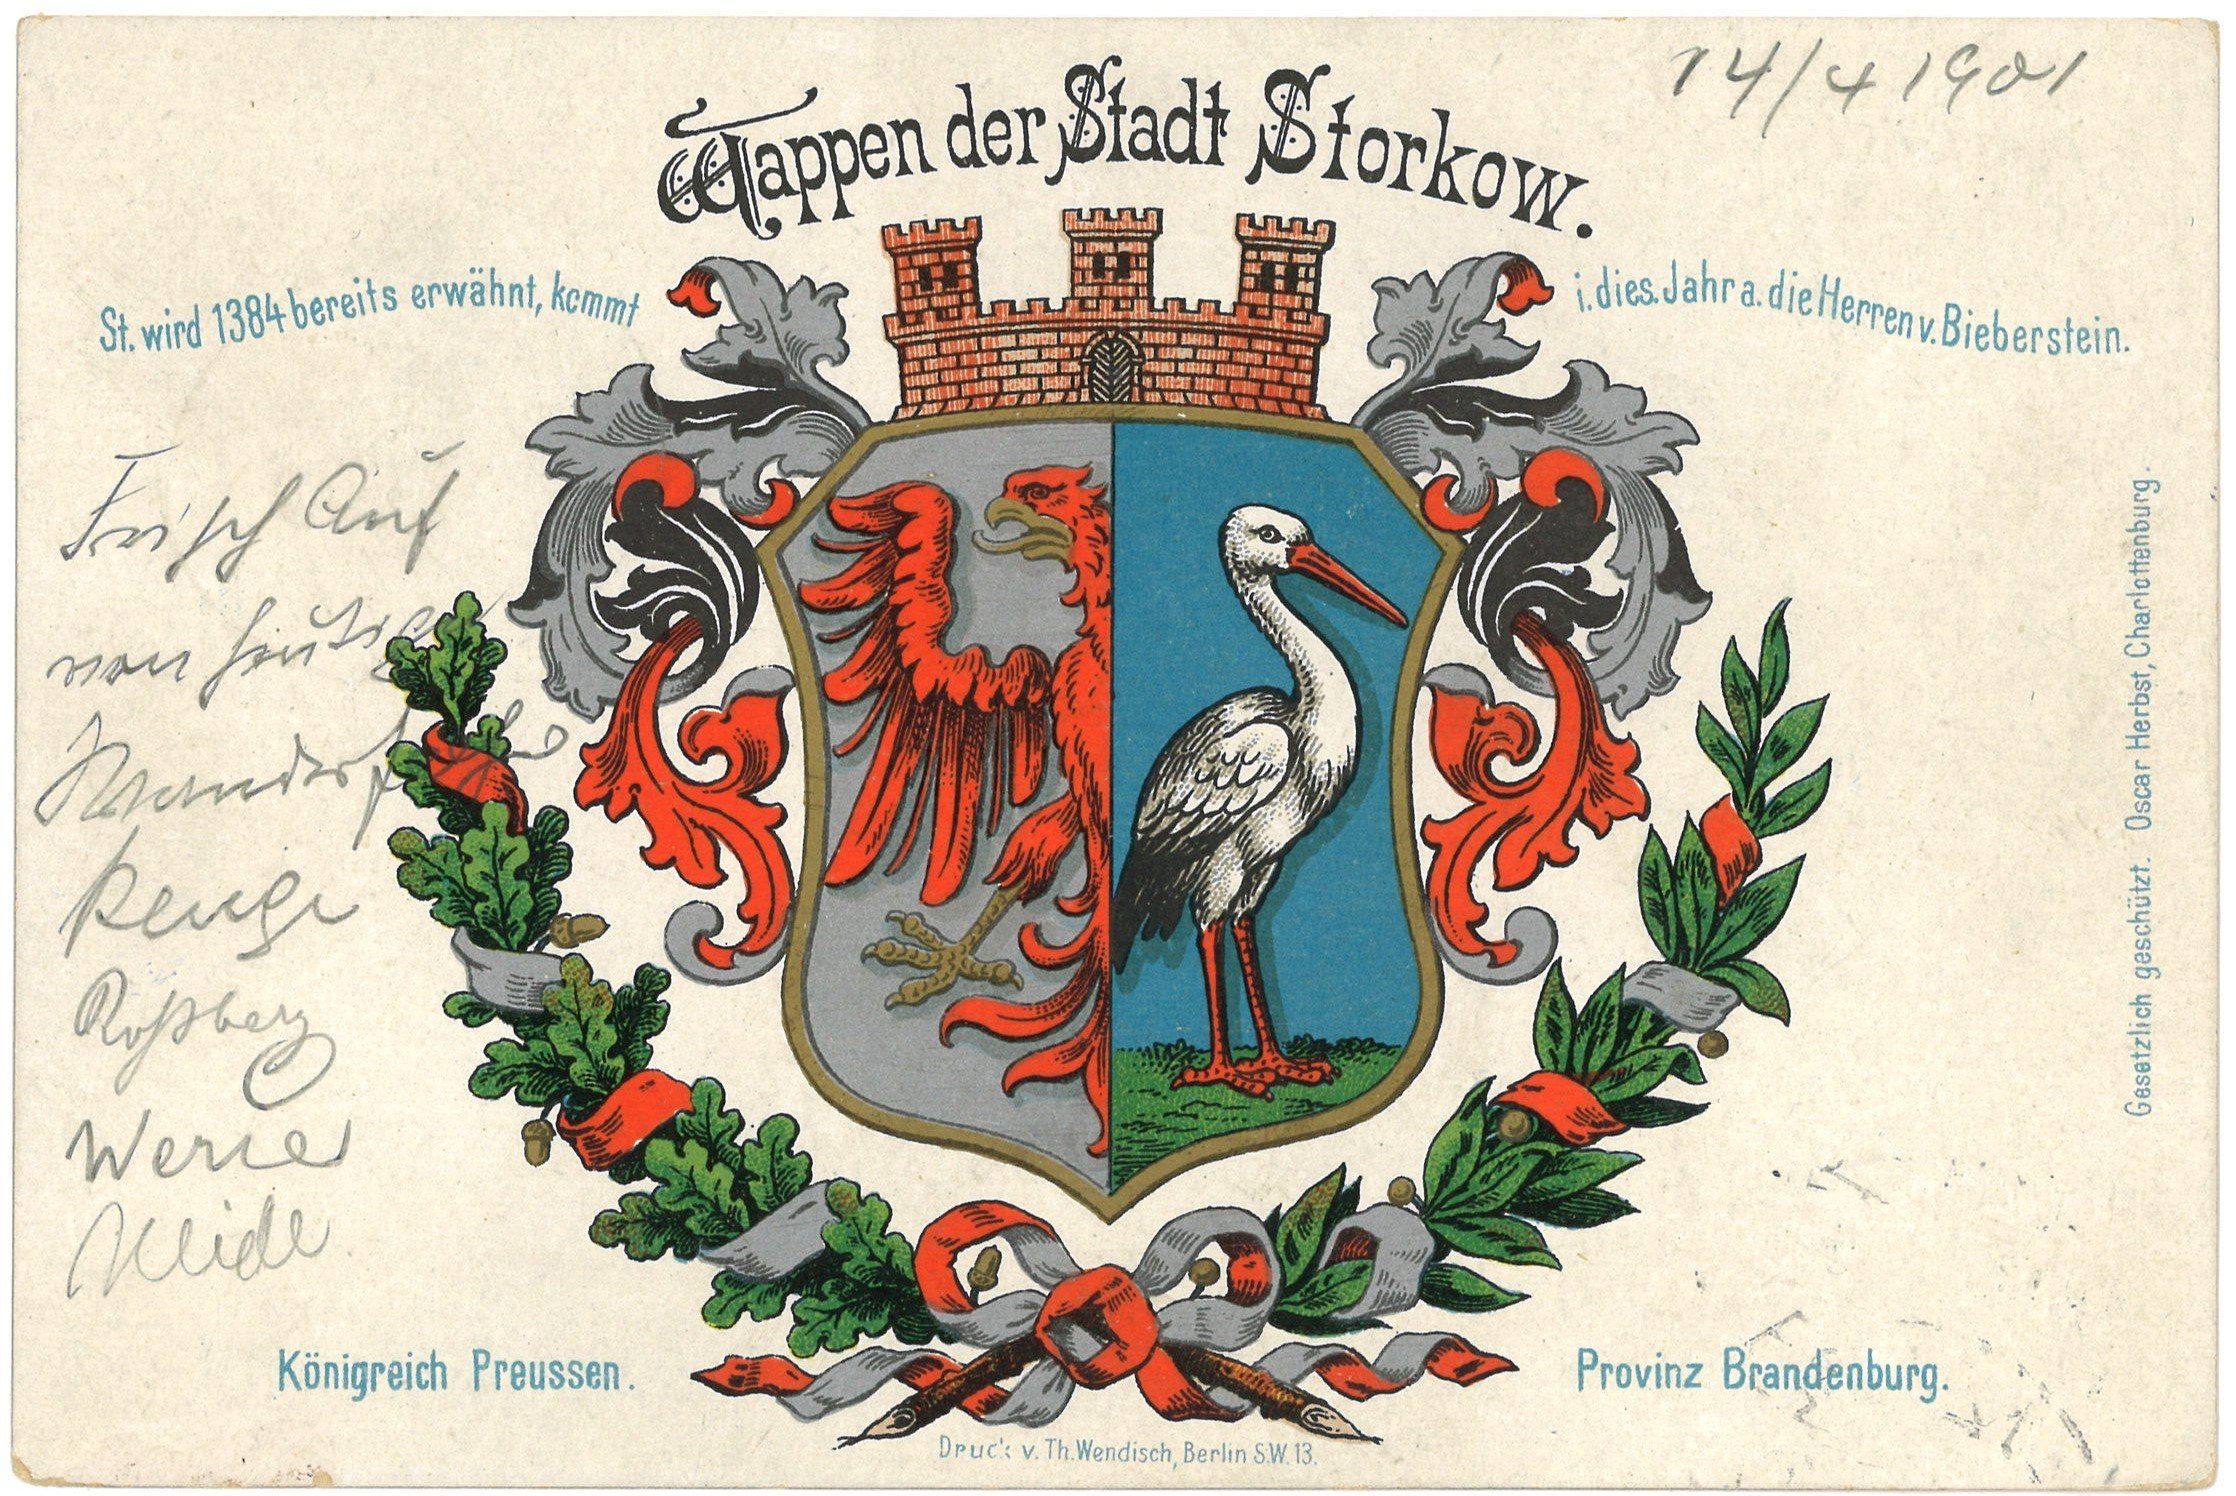 Storkow: Stadtwappen (Landesgeschichtliche Vereinigung für die Mark Brandenburg e.V., Archiv CC BY)